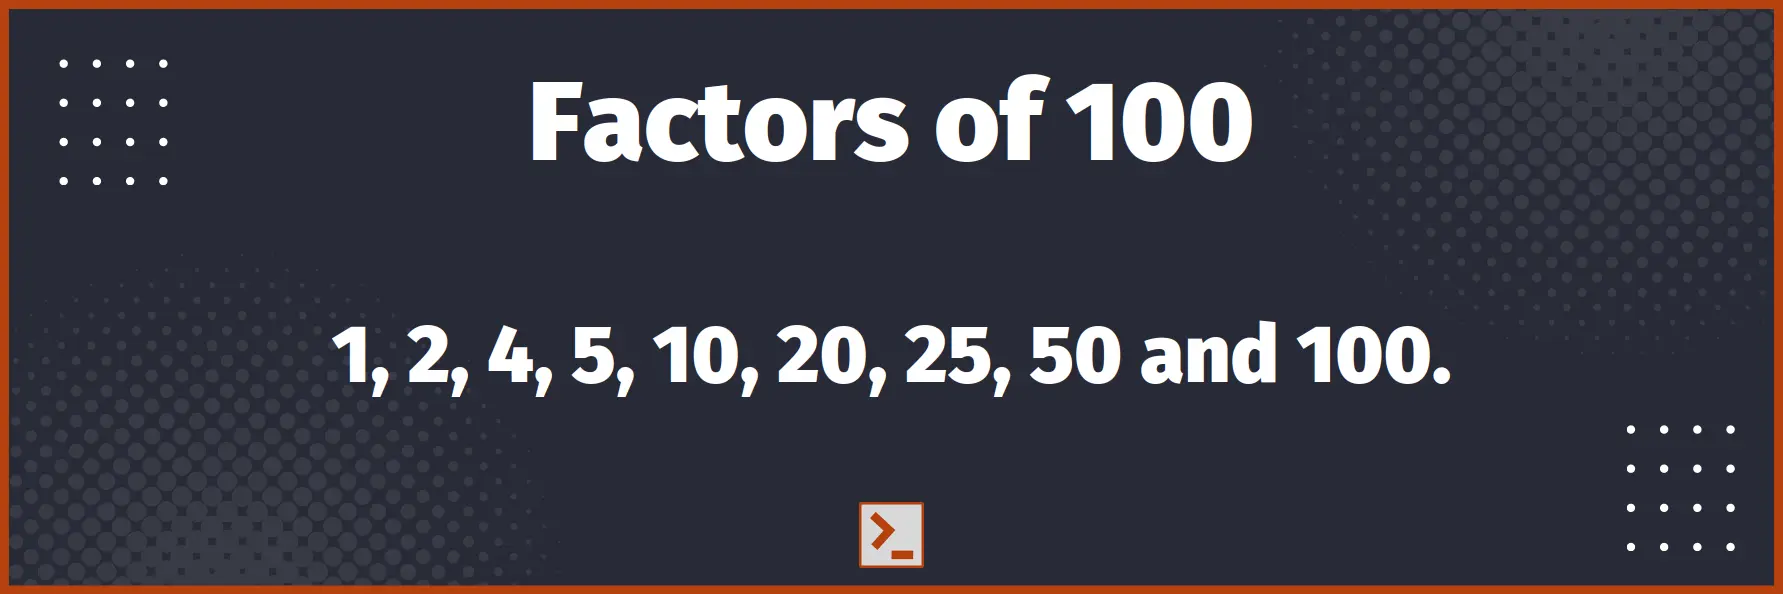 Factors of 100